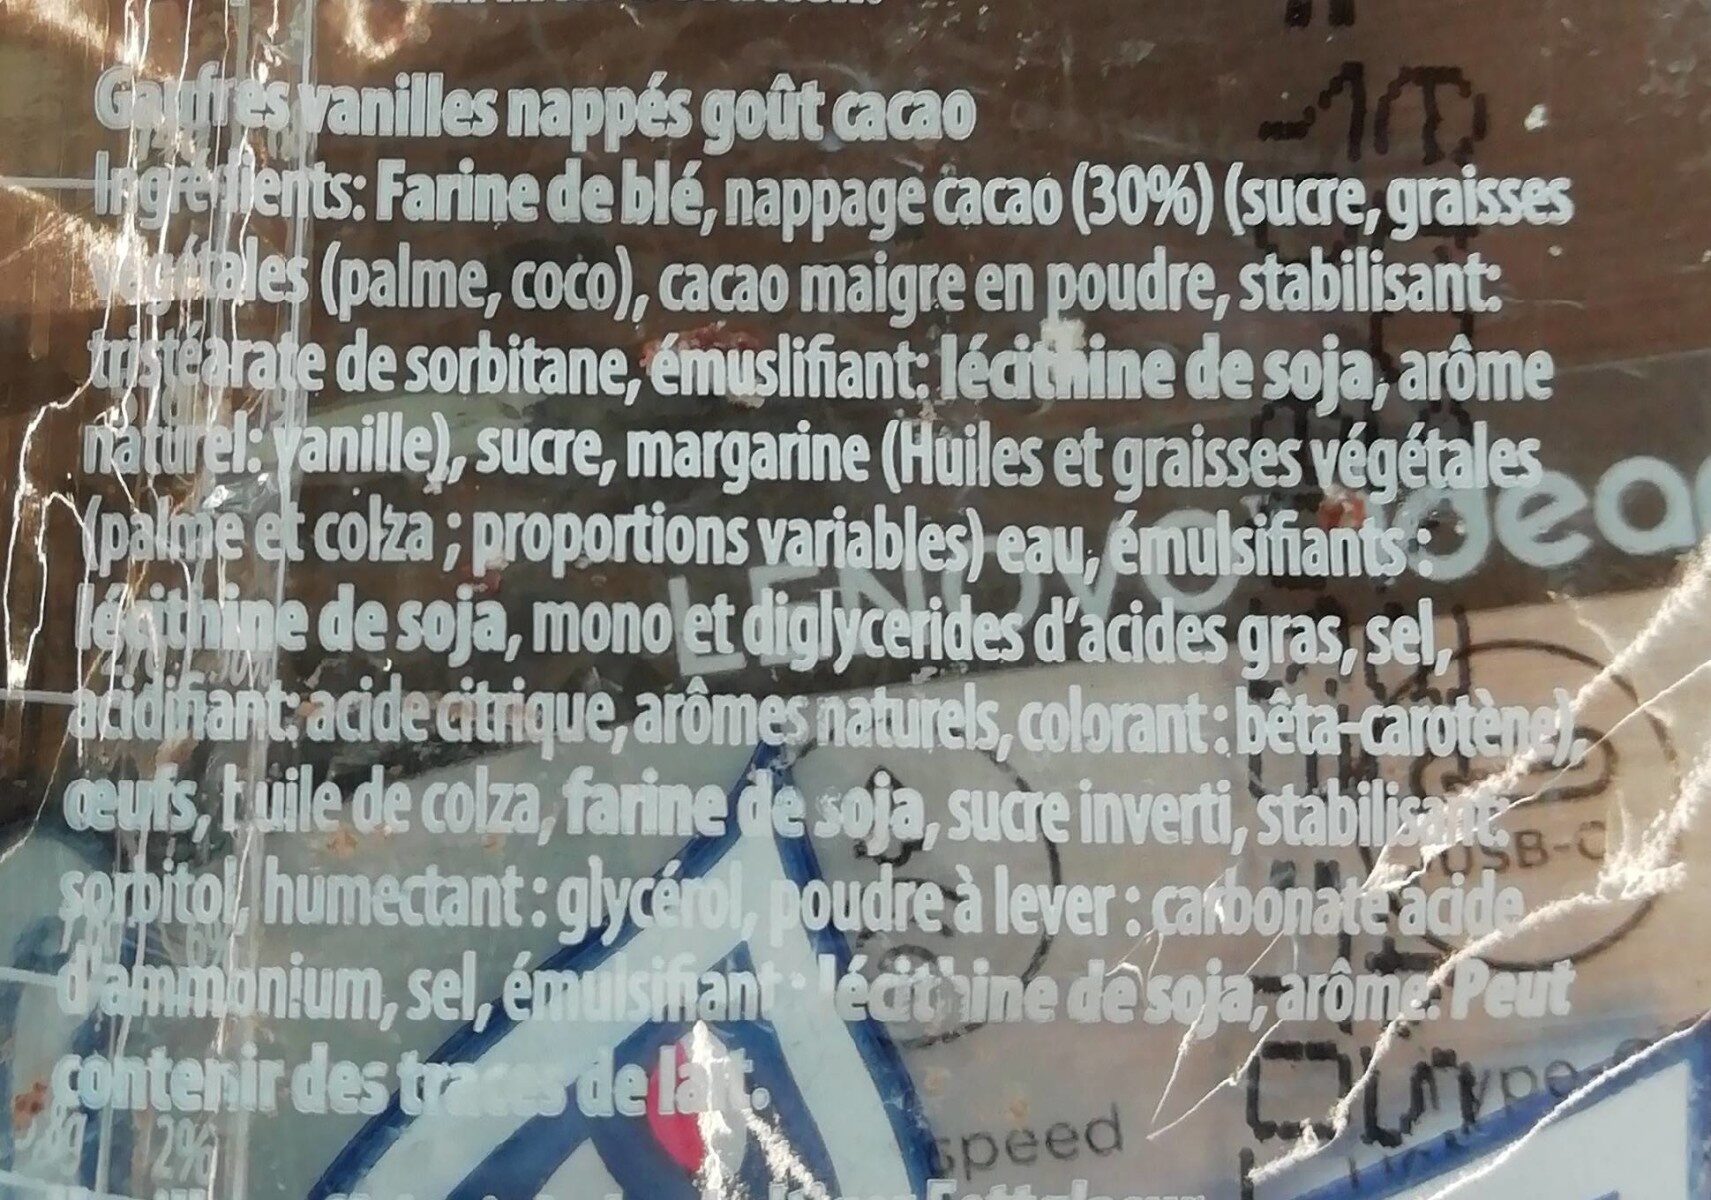 Gauffre au chocolat - Ingredients - fr